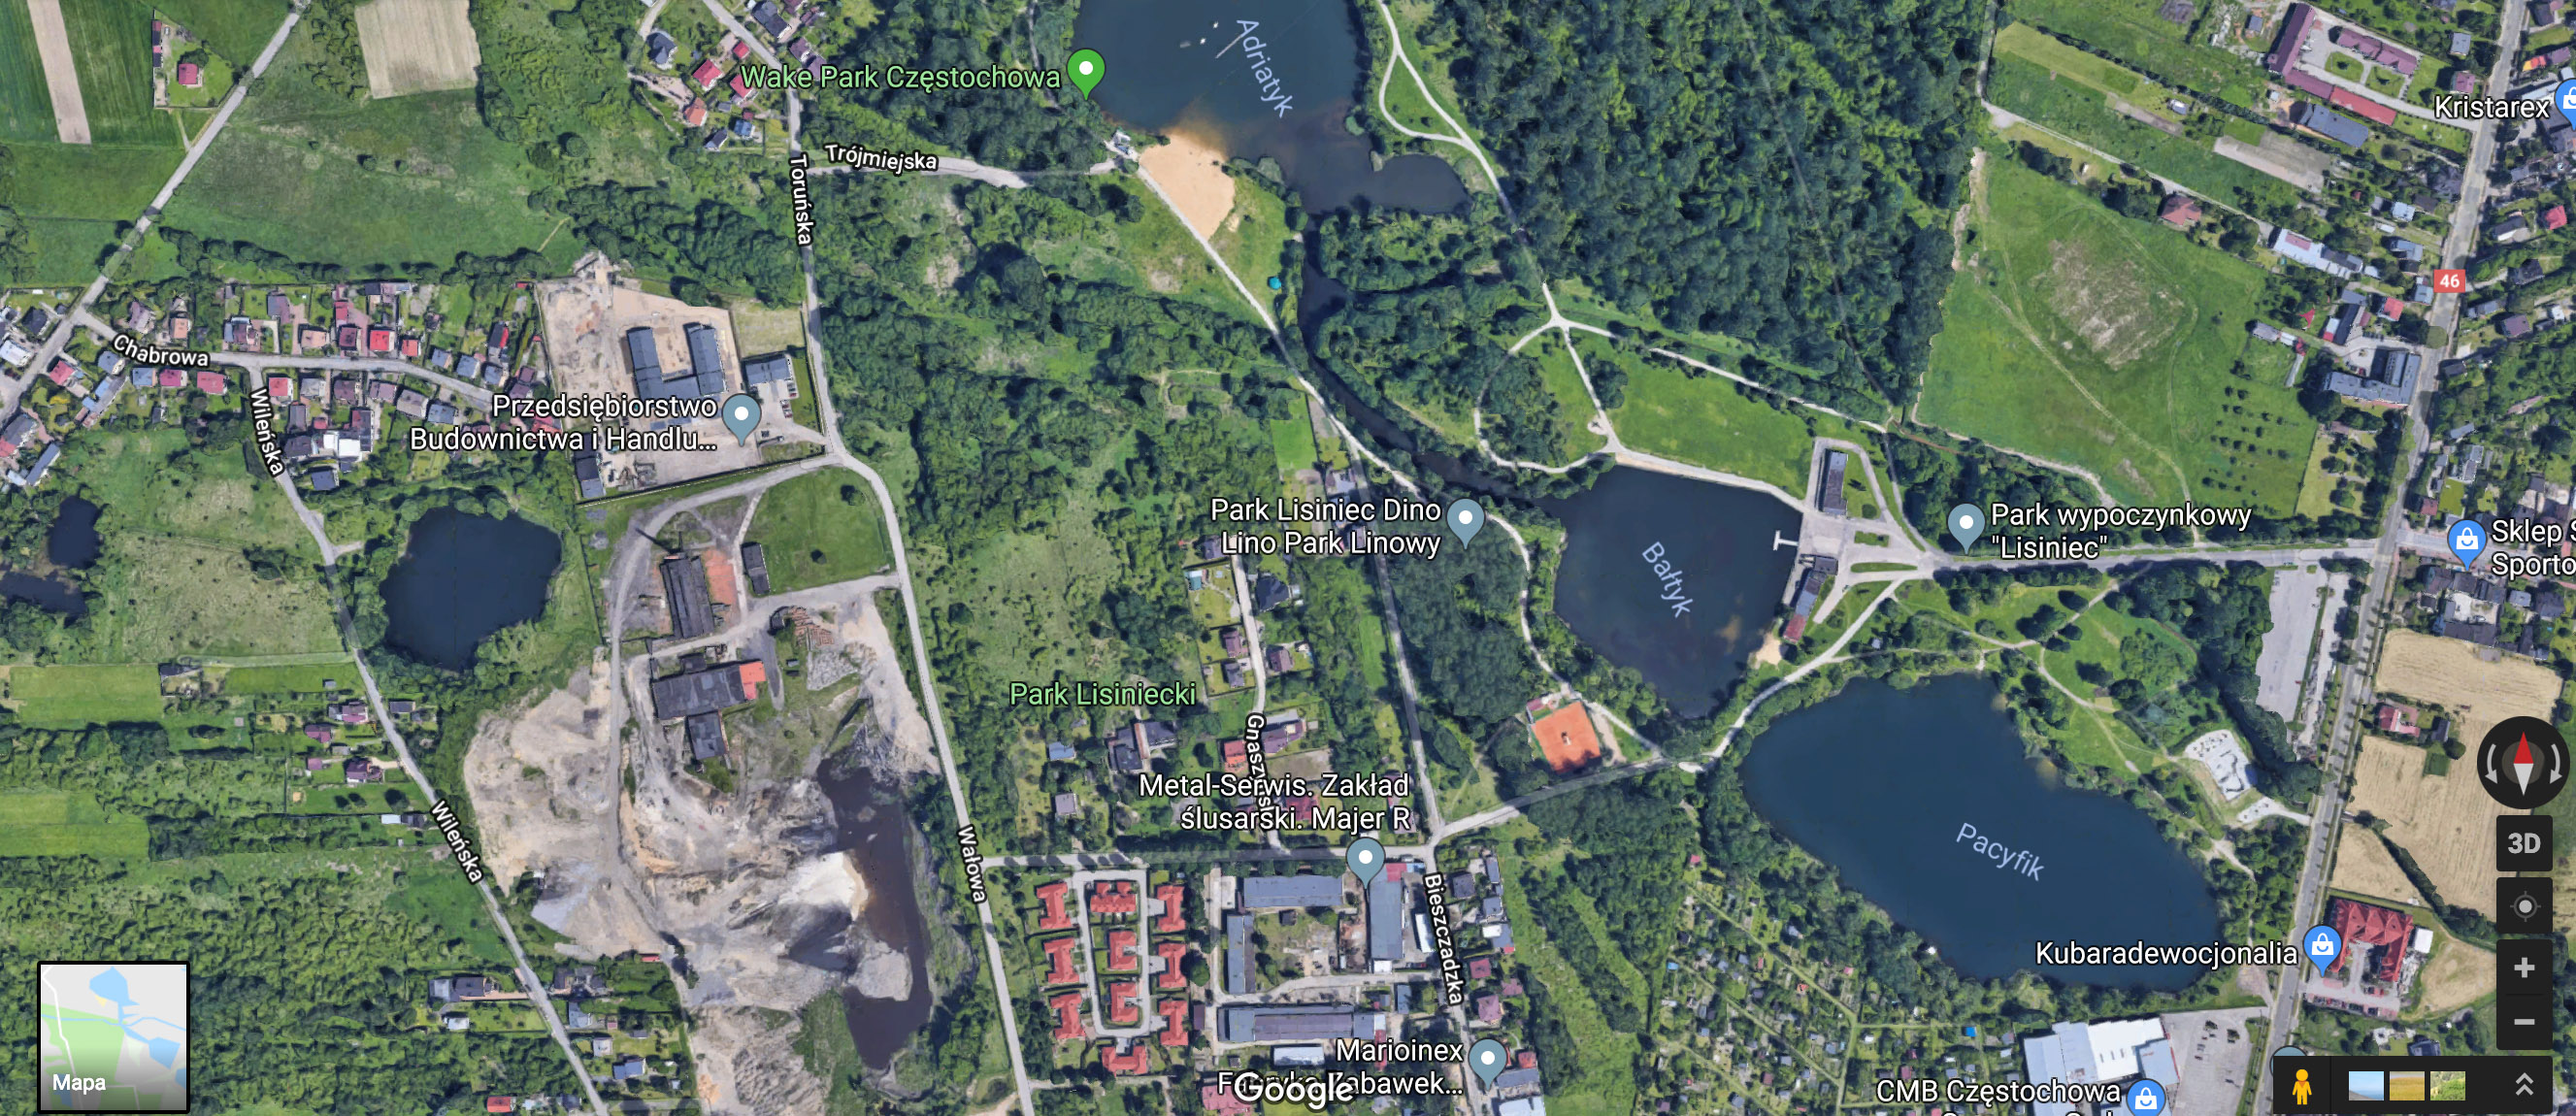 Mapa Google - Mapa topograficzna terenu (widok z satelity), na którym odbyły się ćwiczenia